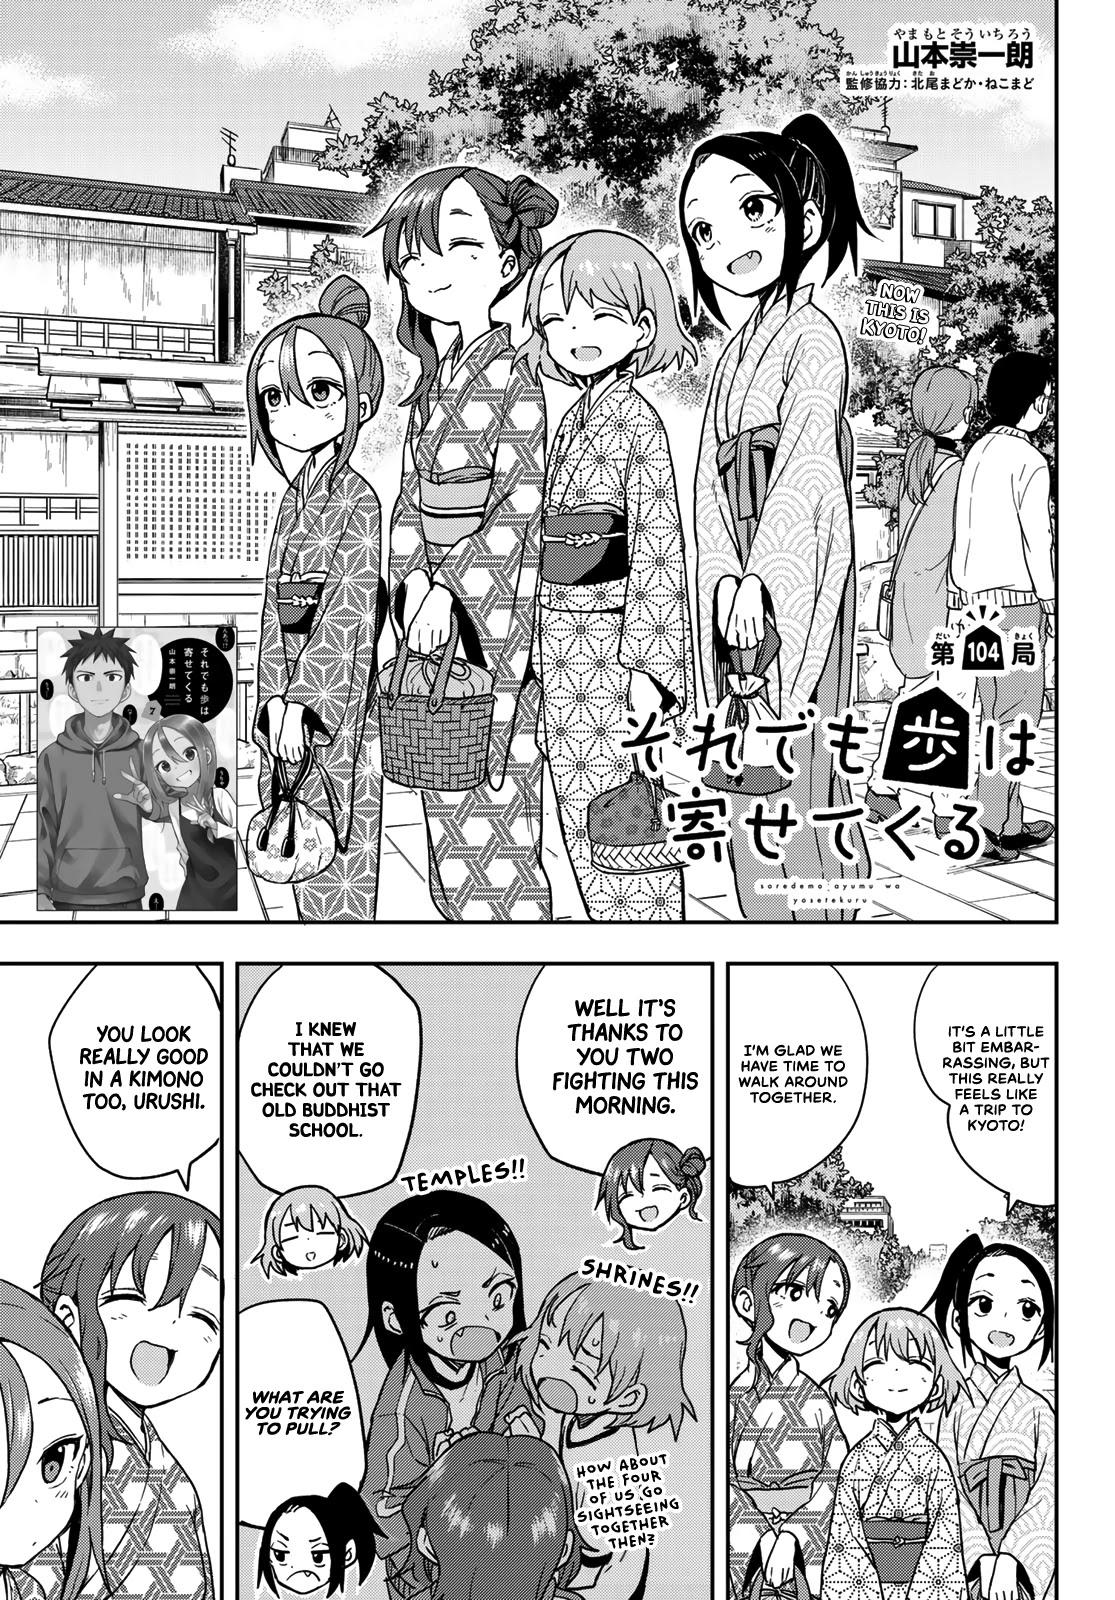 Read Manga Soredemo Ayumu Wa Yosetekuru - Chapter 222